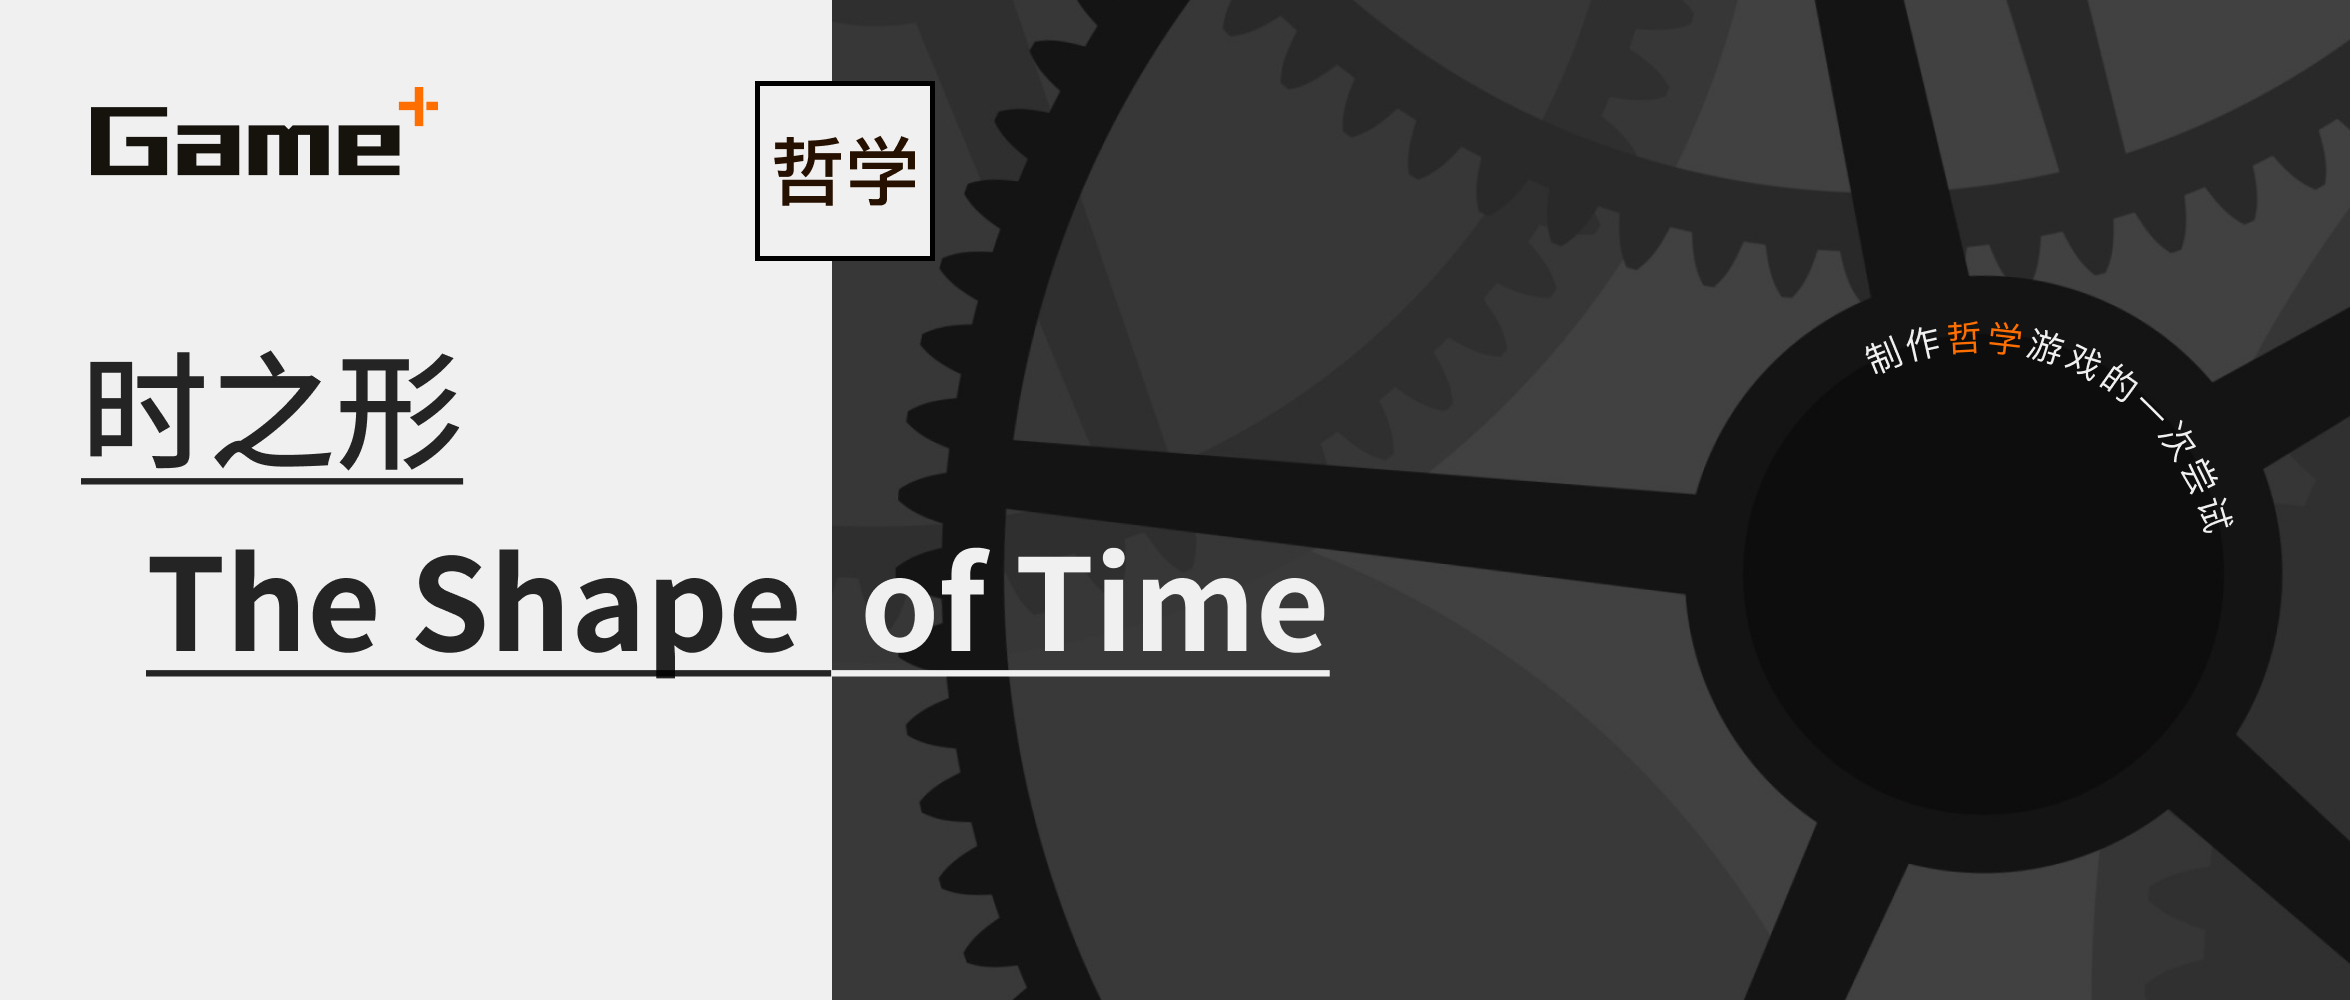 時間是什麼形狀？「Gameplus 遊戲+」第二款作品《時之形》概覽